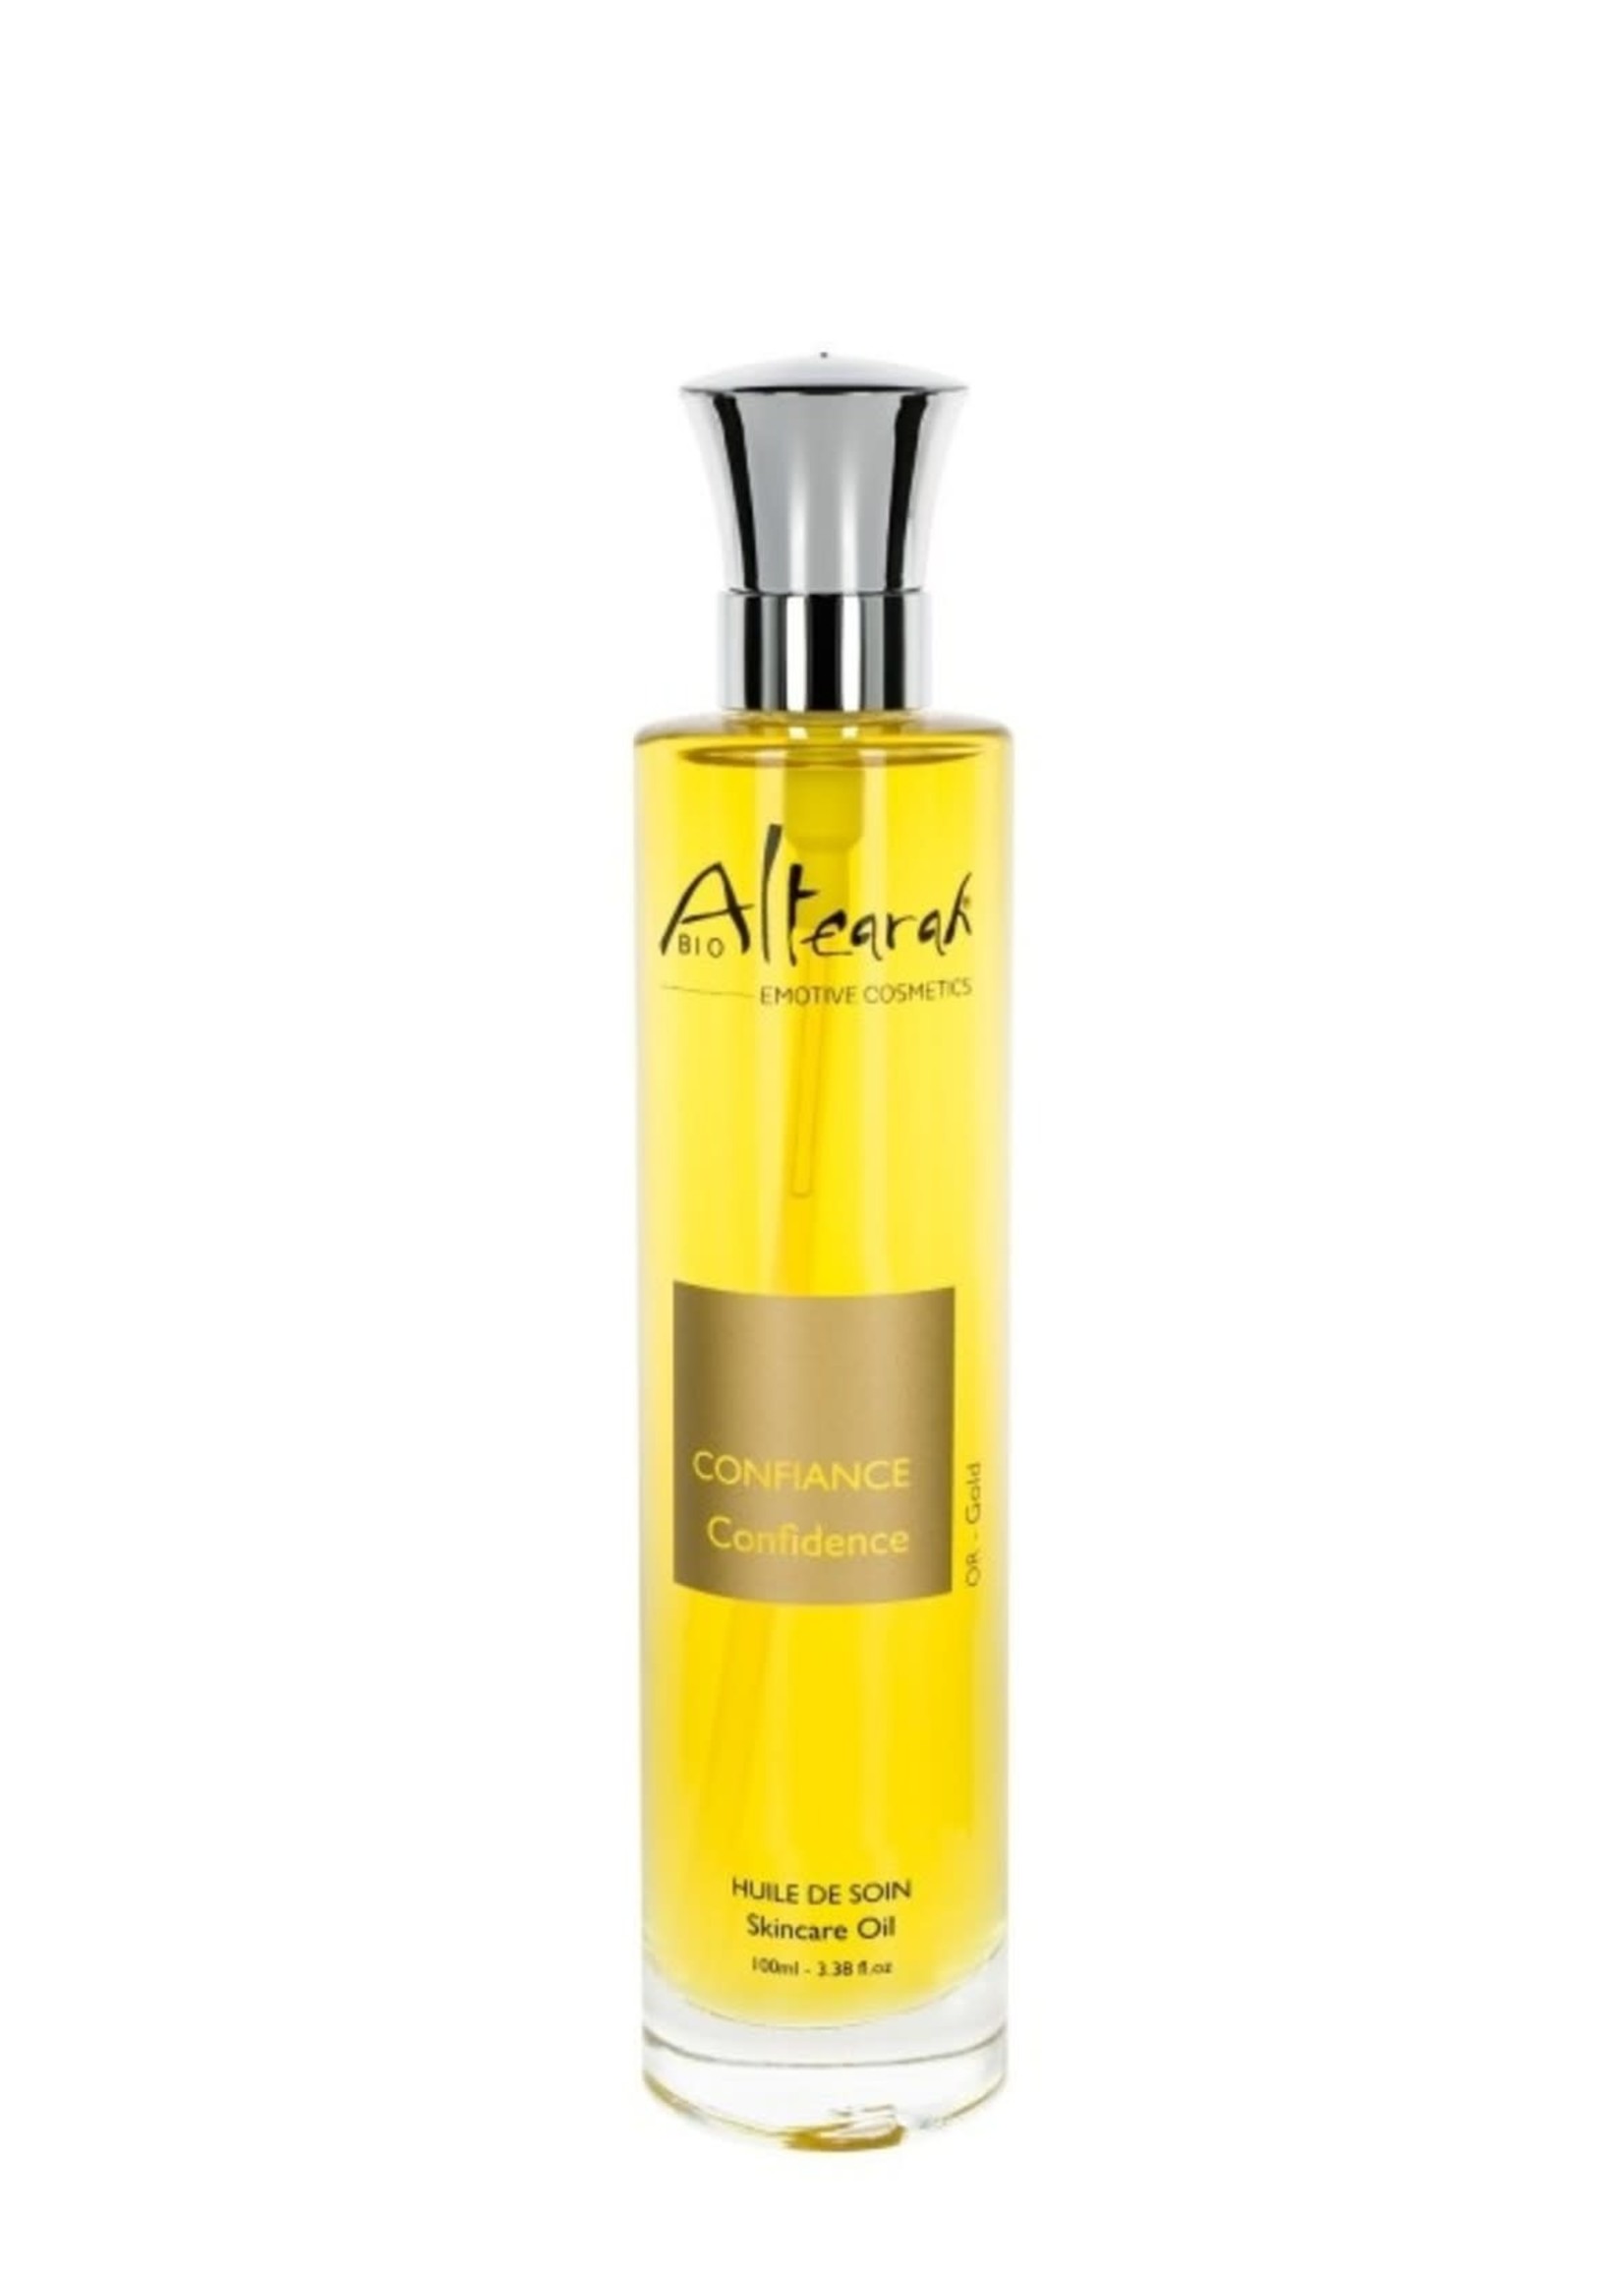 Altearah Skin Care Oil (Gold) Confidence